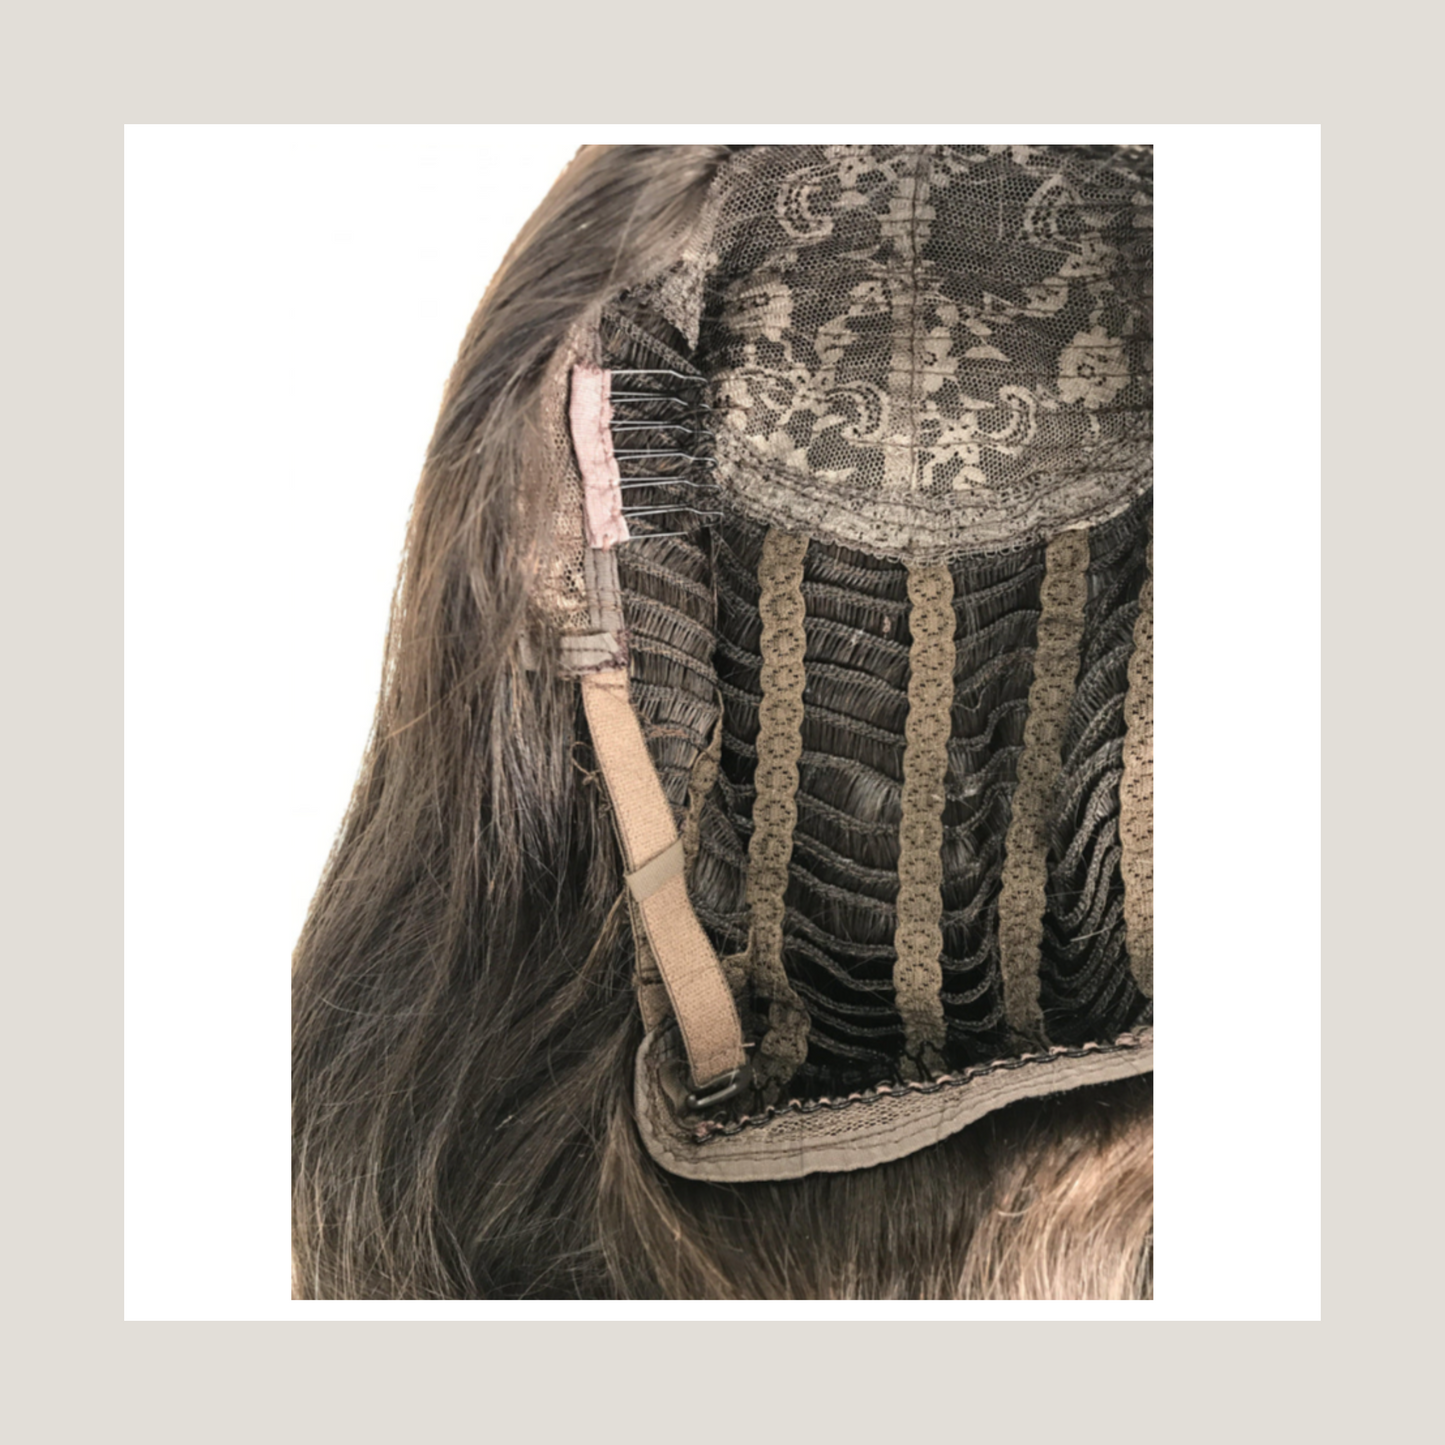 Virgin remy mänskligt hår halv peruk, brasiliansk hår peruk, europeiskt hår peruk, 3/4 peruk